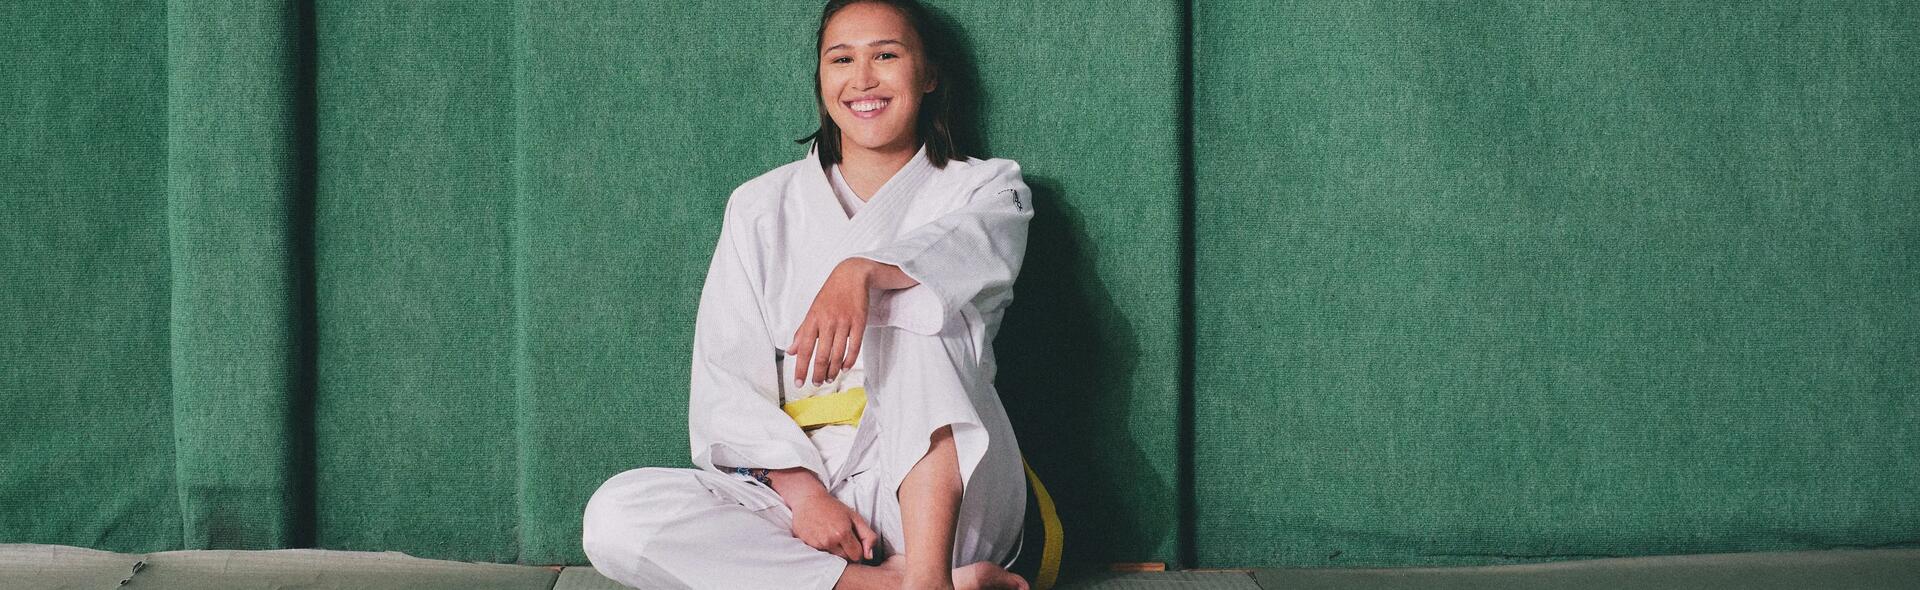 kobieta siedząca po ścianą w kimonie do trenowania sztuki walki